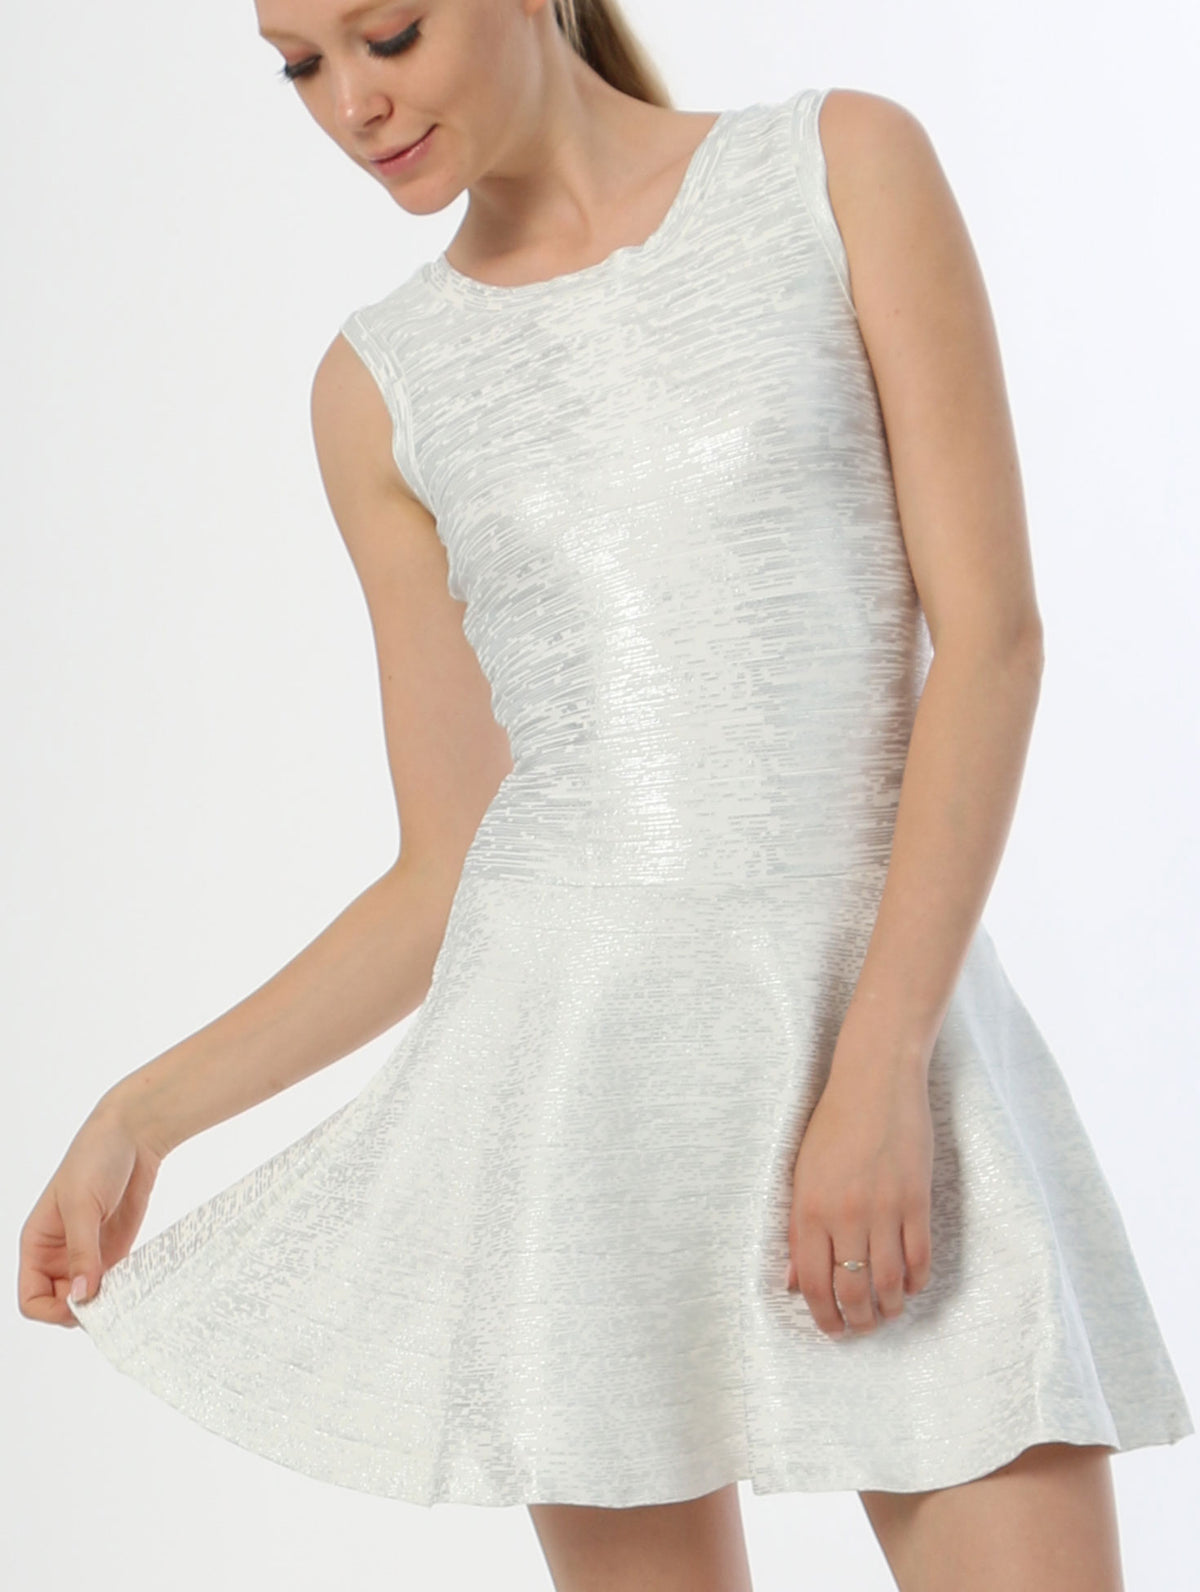 Bandage Dress - White